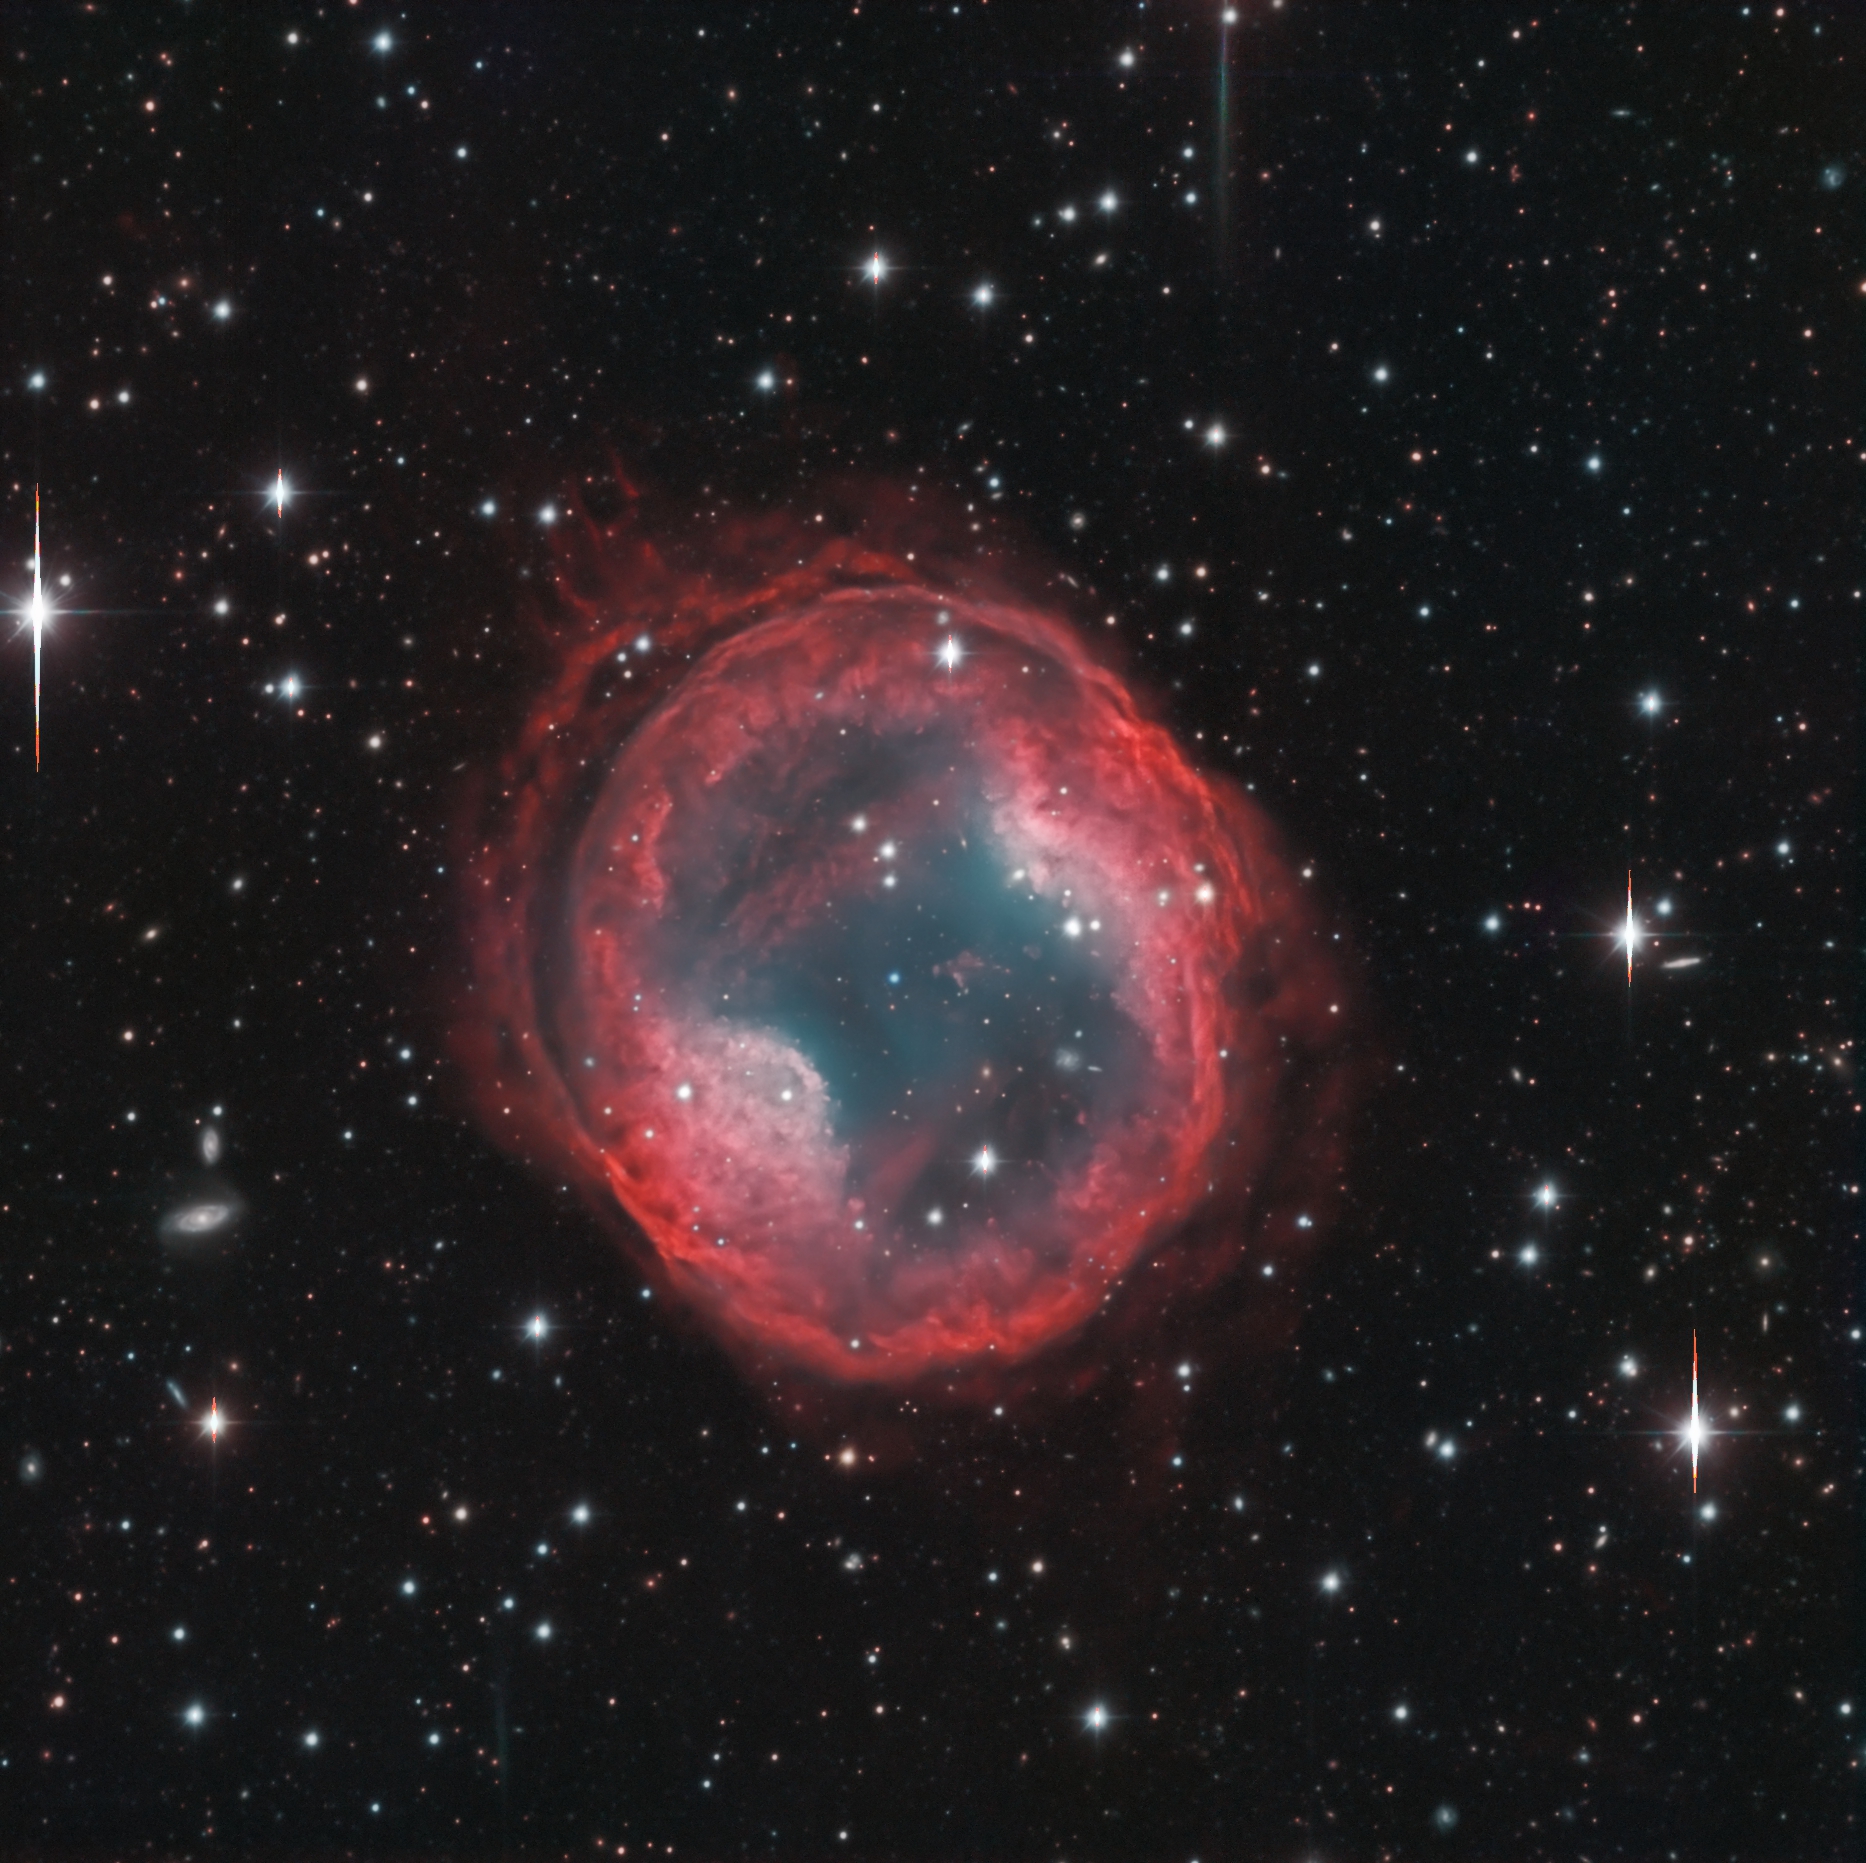 Planetary Nebula PK 164 31